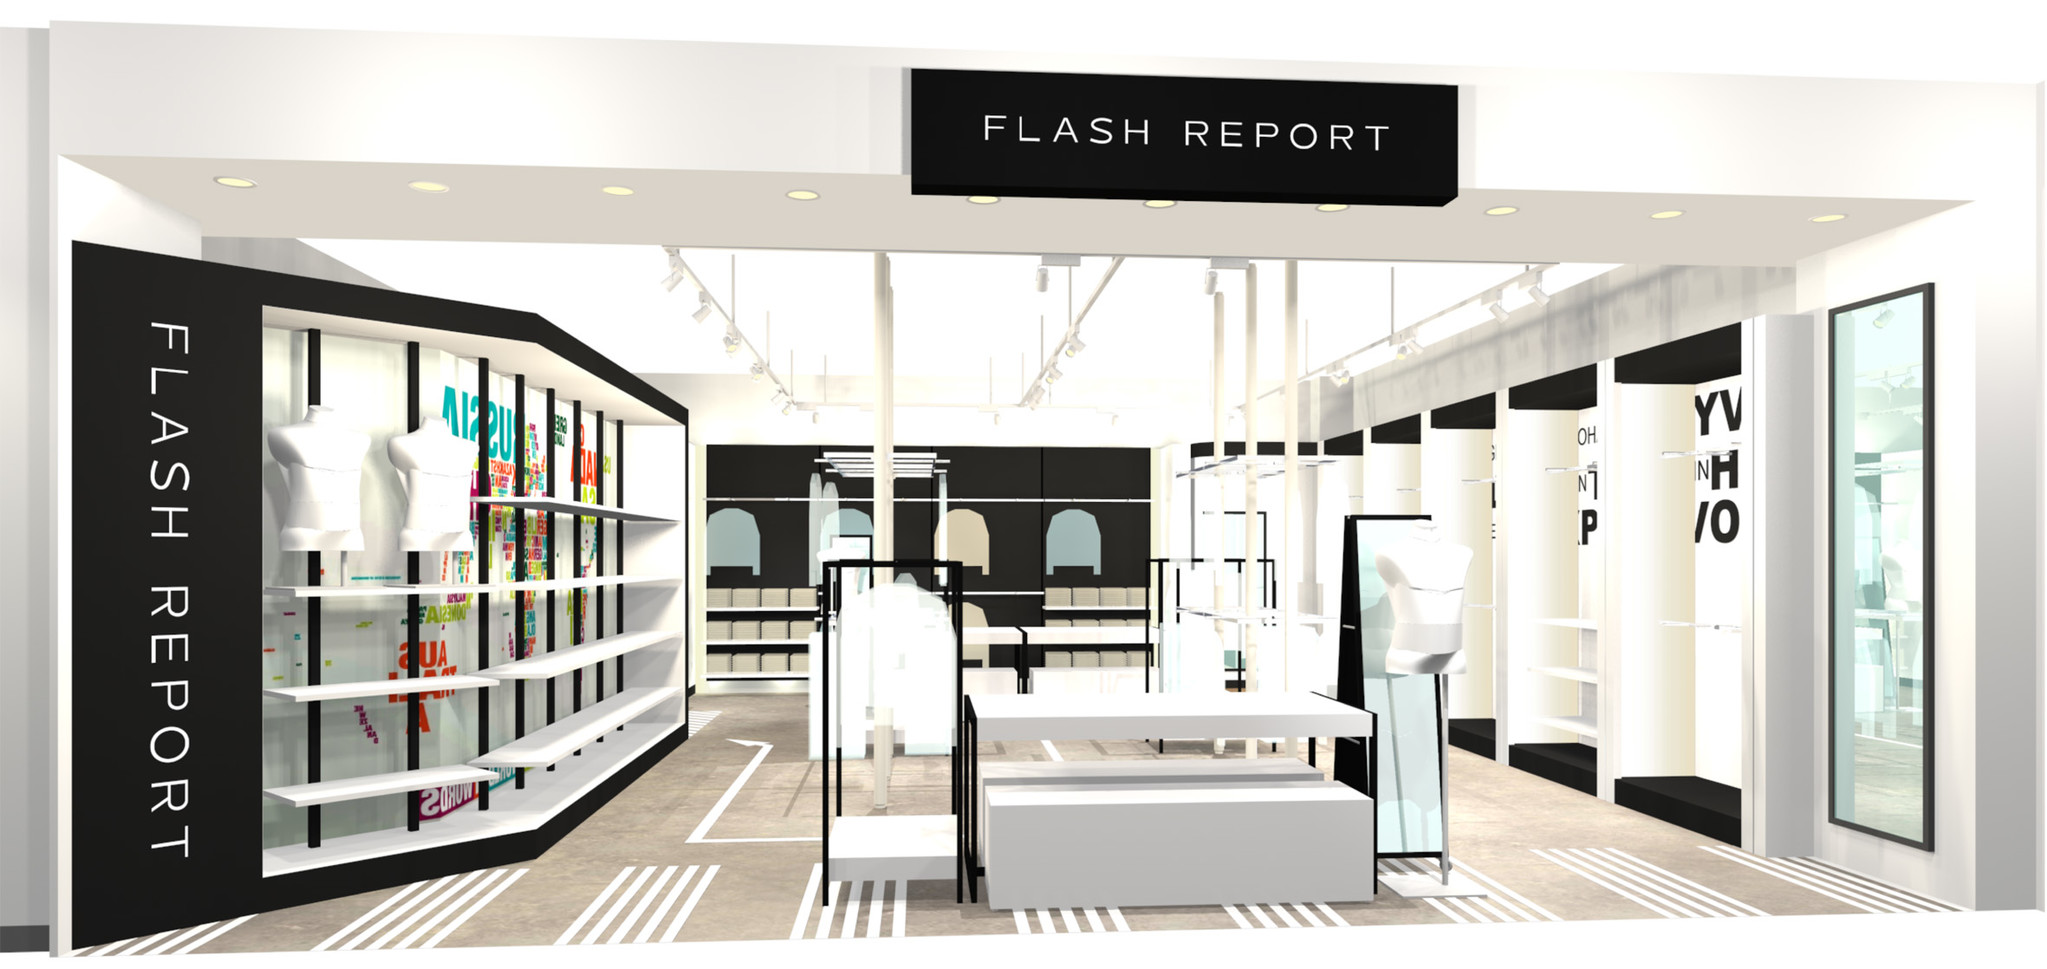 FLASH REPORT フラッシュリポート ミリタリーコート Sサイズ 通販